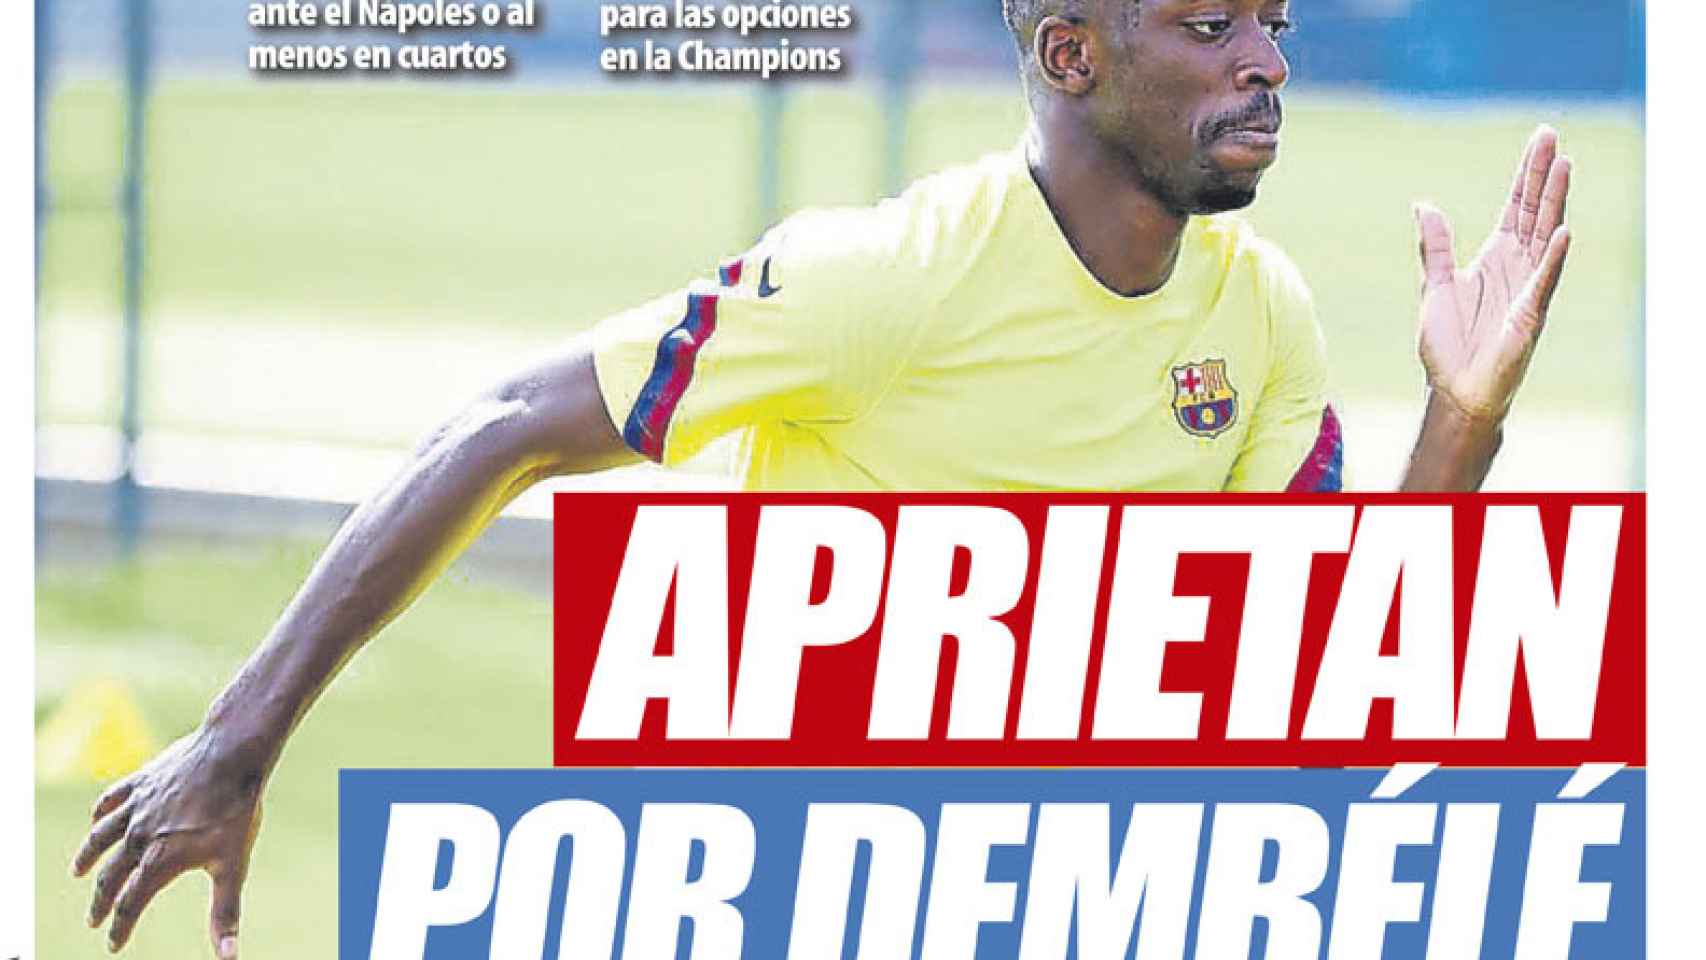 La portada del diario Mundo Deportivo (23/07/2020)